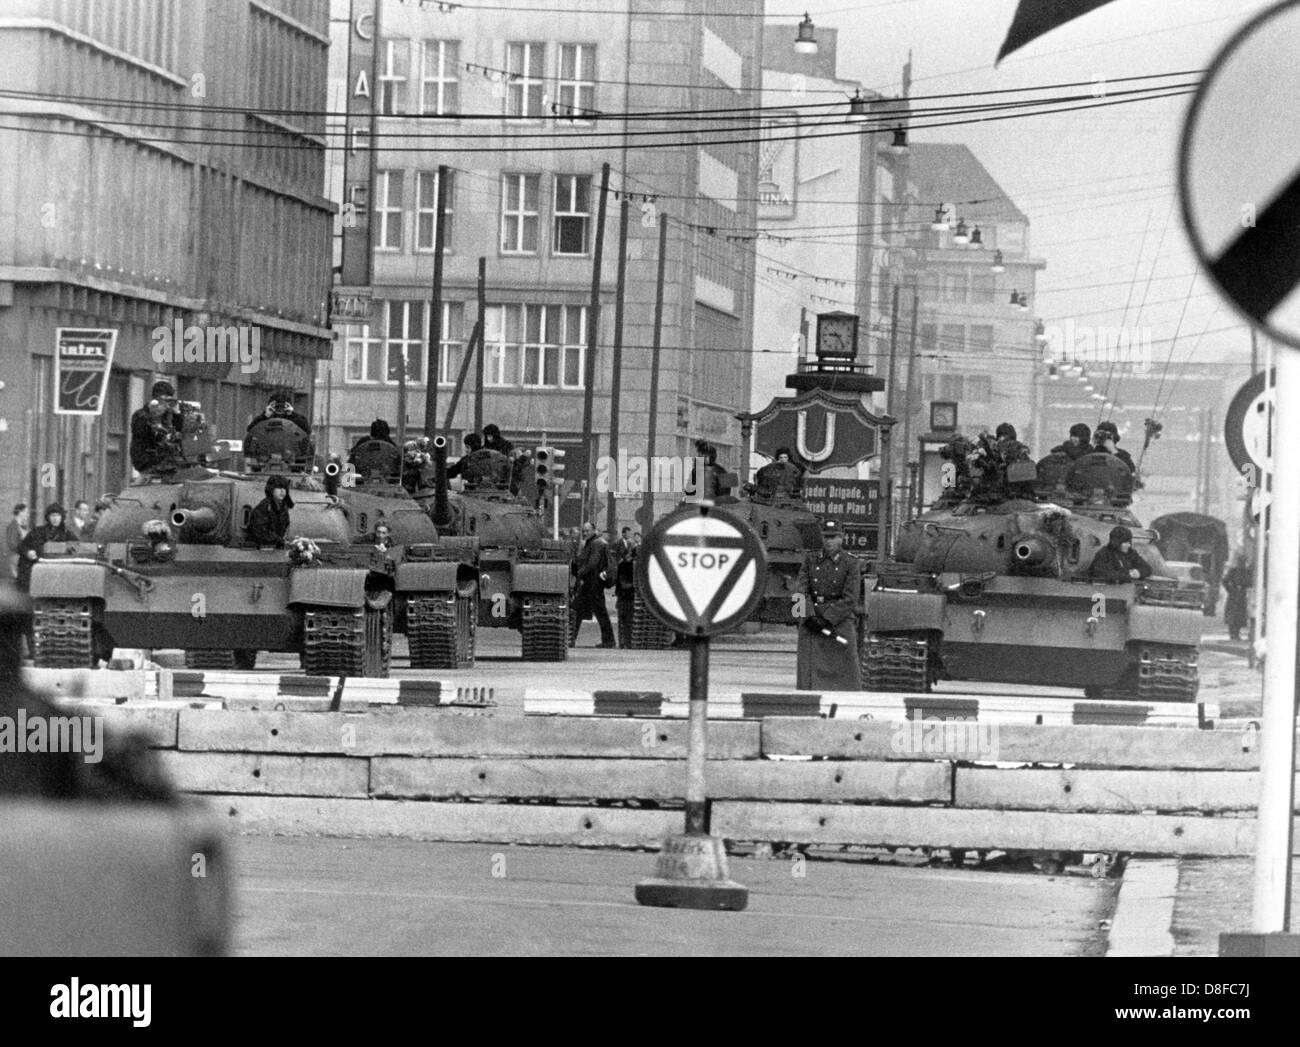 Carri armati sovietici puntando su Berlino Ovest raffigurato all broder attraversando Friedrich street a Berlino Est, DDR, 28 ottobre 1961. Le autorità sovietiche avevano impedito forzatamente i confini di Berlino risultante in una face-off di U.S e carri armati sovietici. Foto Stock